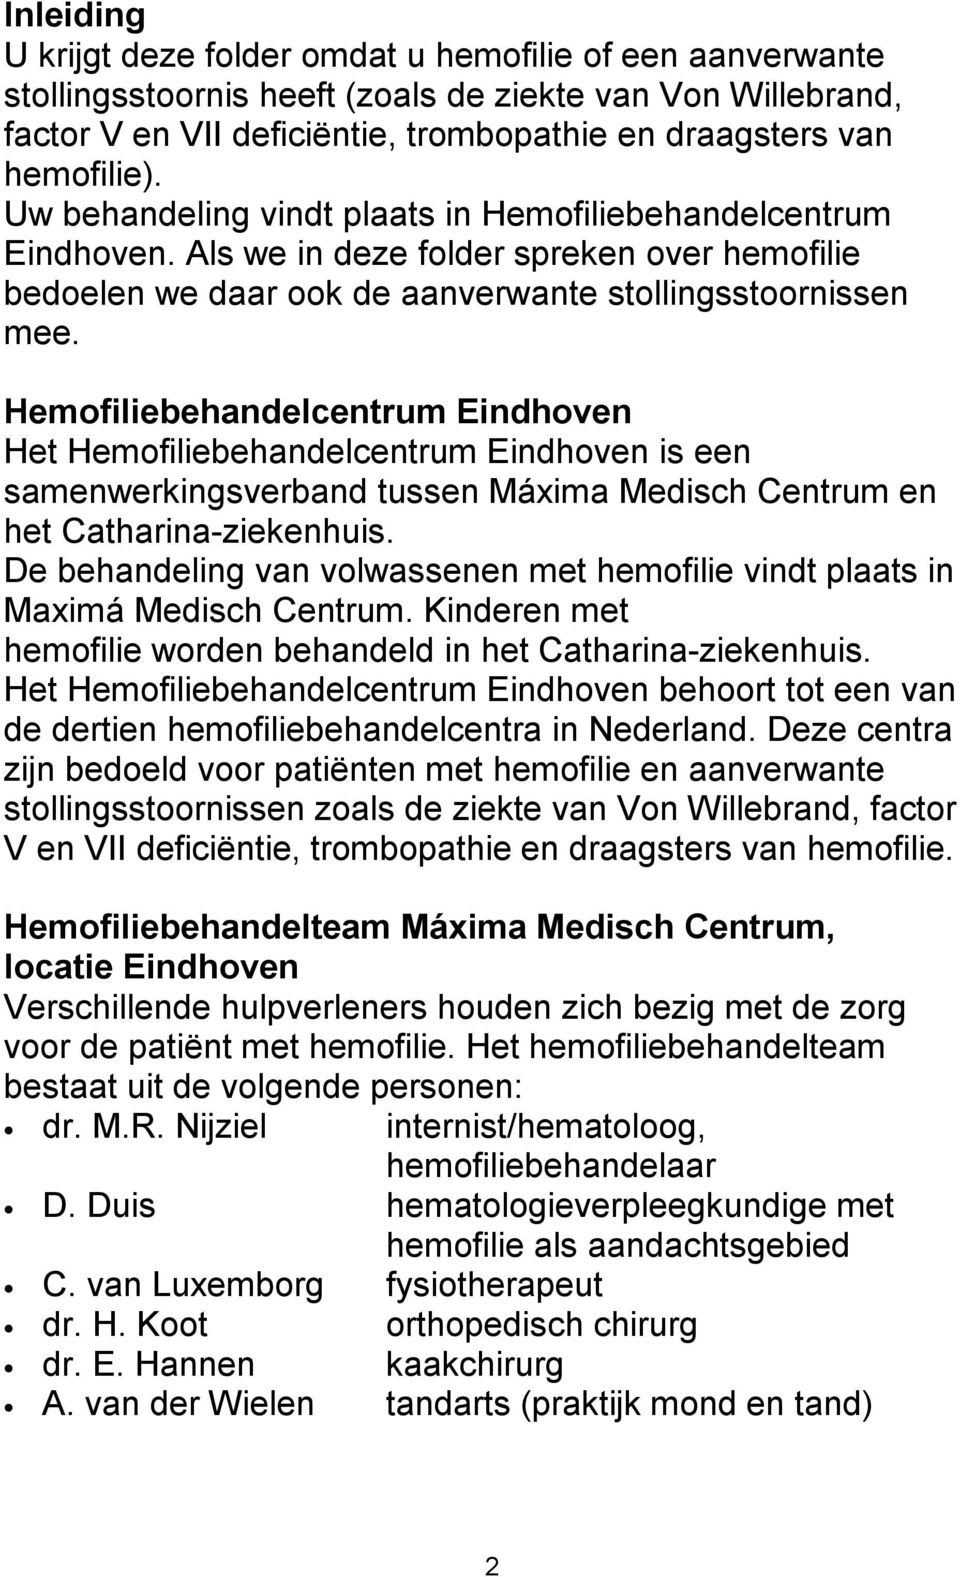 Hemofiliebehandelcentrum Eindhoven Het Hemofiliebehandelcentrum Eindhoven is een samenwerkingsverband tussen Máxima Medisch Centrum en het Catharina-ziekenhuis.